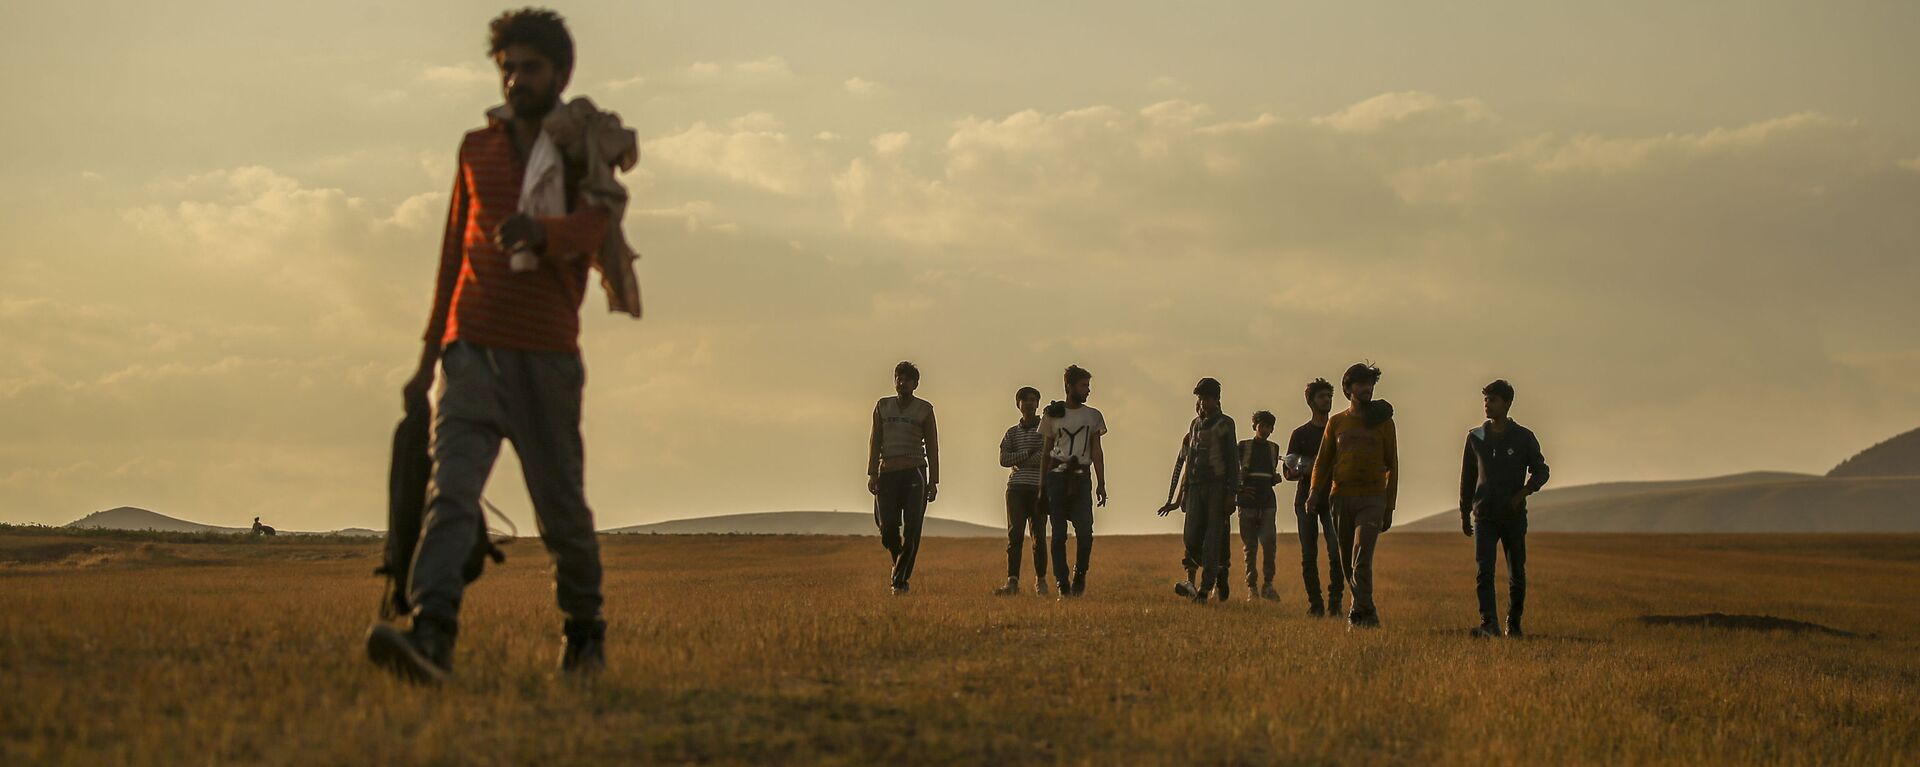 Афганцы гуляют по сельской местности в Татване, Турция  - Sputnik Таджикистан, 1920, 02.09.2021